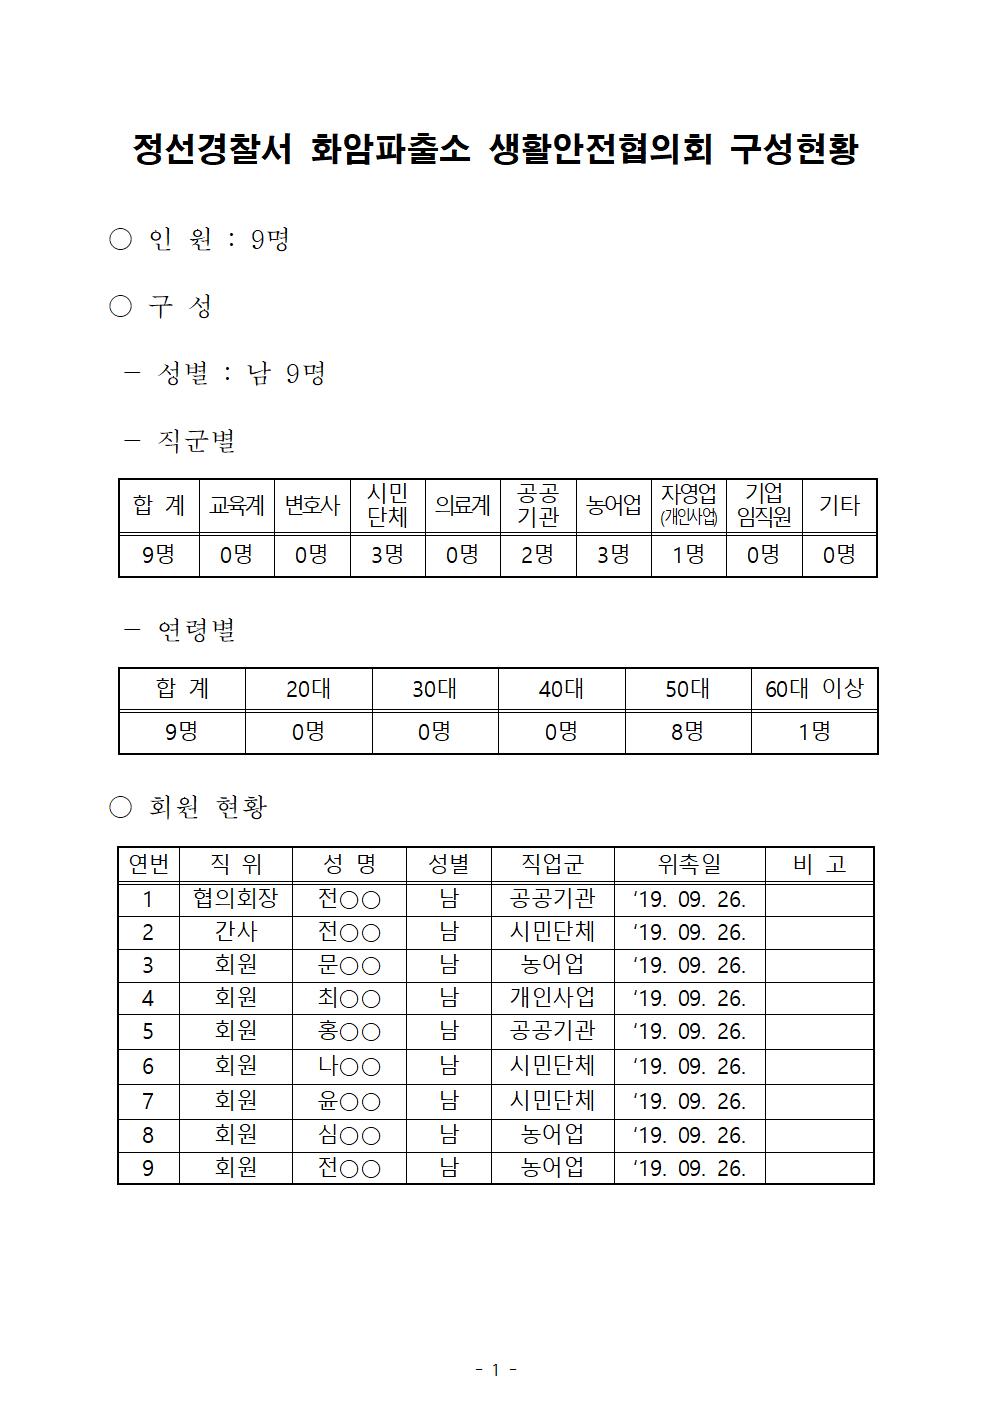 정선경찰서 생활안전협의회 구성 현황-화암파출소 생안협 명단(완료)001